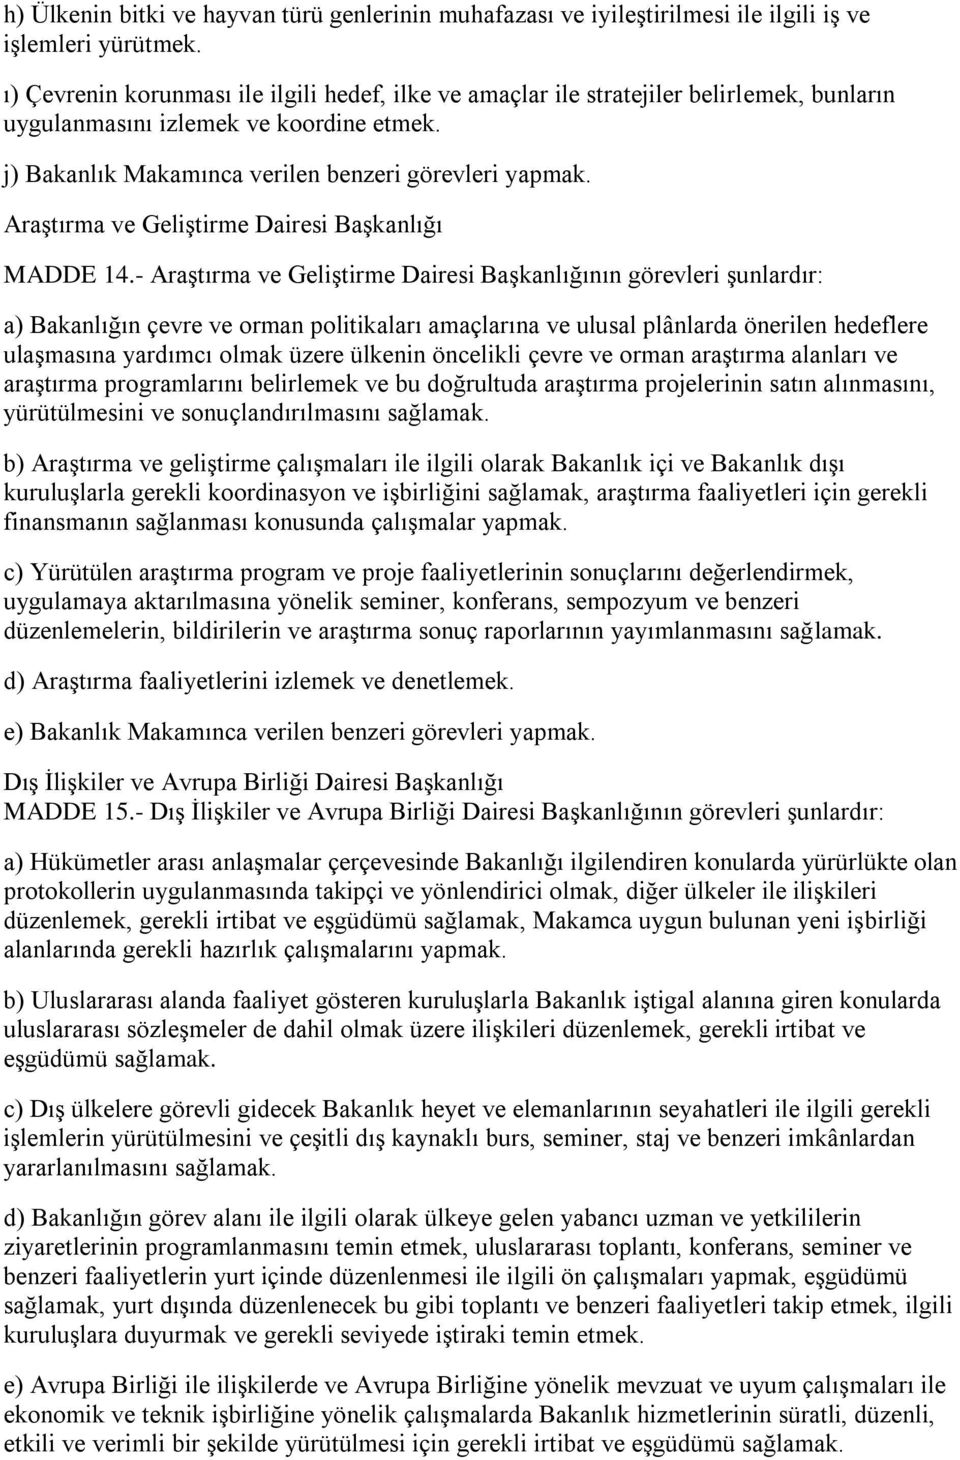 Araştırma ve Geliştirme Dairesi Başkanlığı MADDE 14.